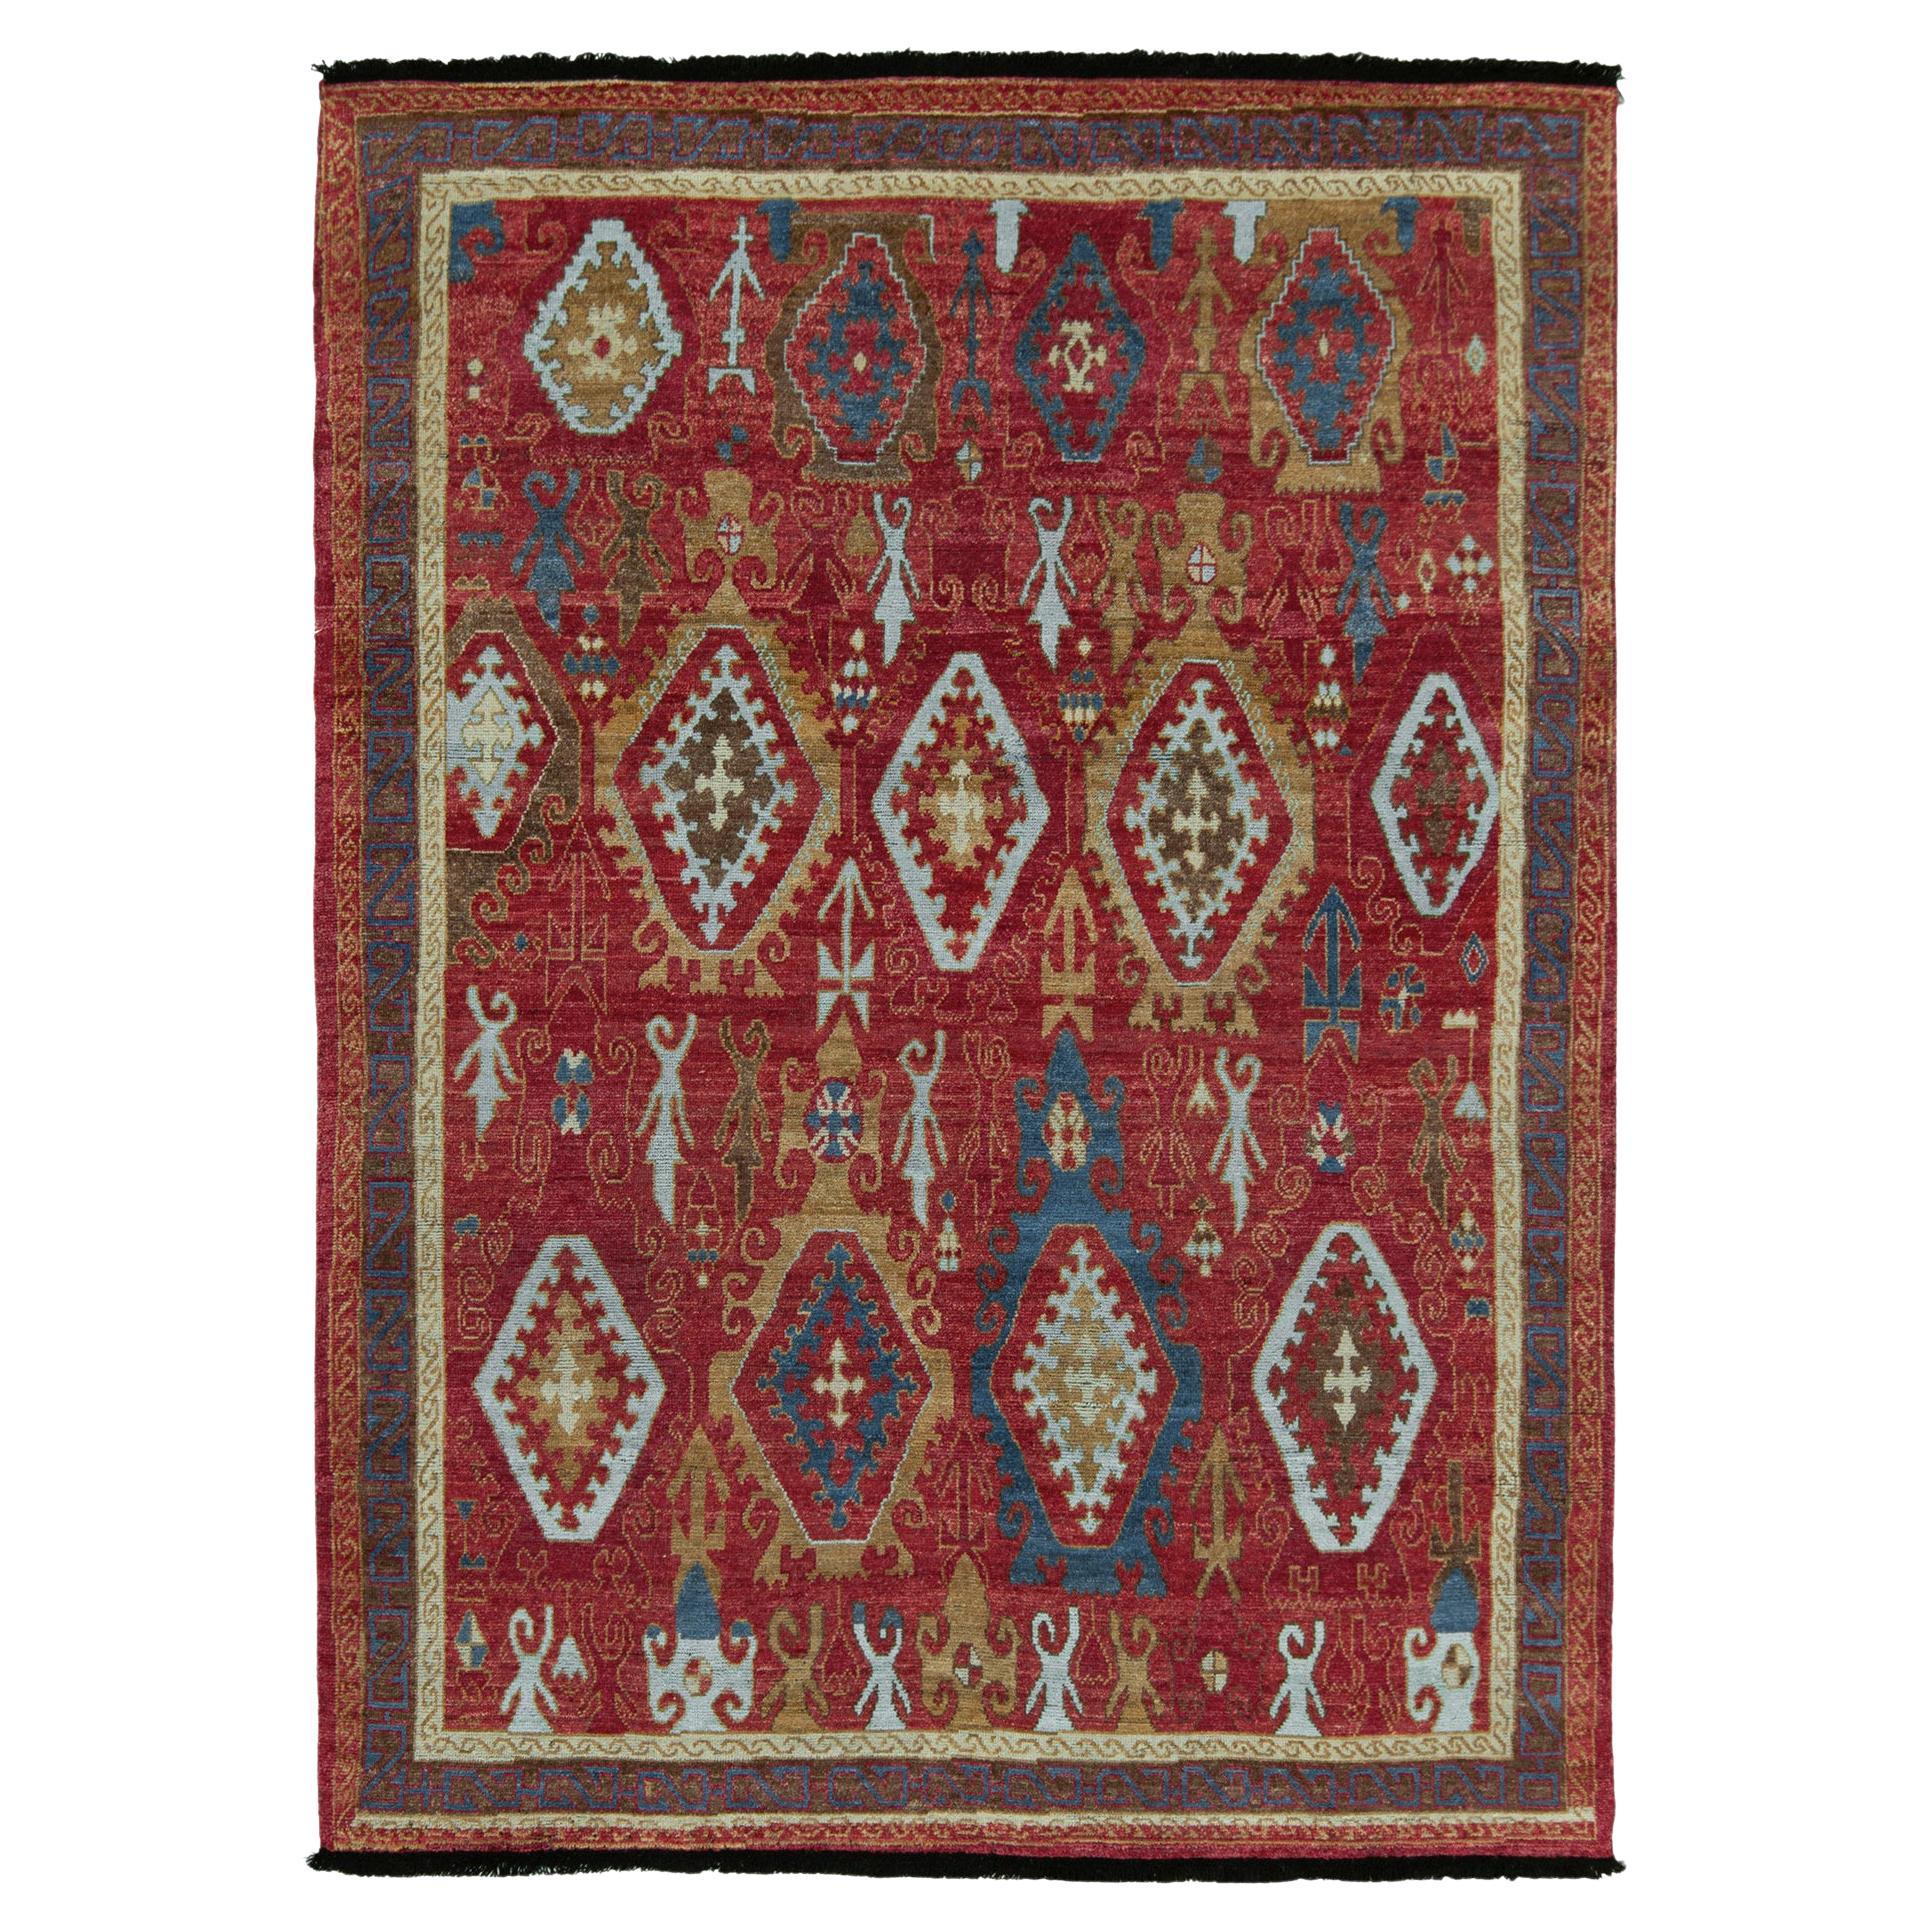 Tapis et tapis Kilim de style tribal à motifs géométriques rouges, bleus et bruns